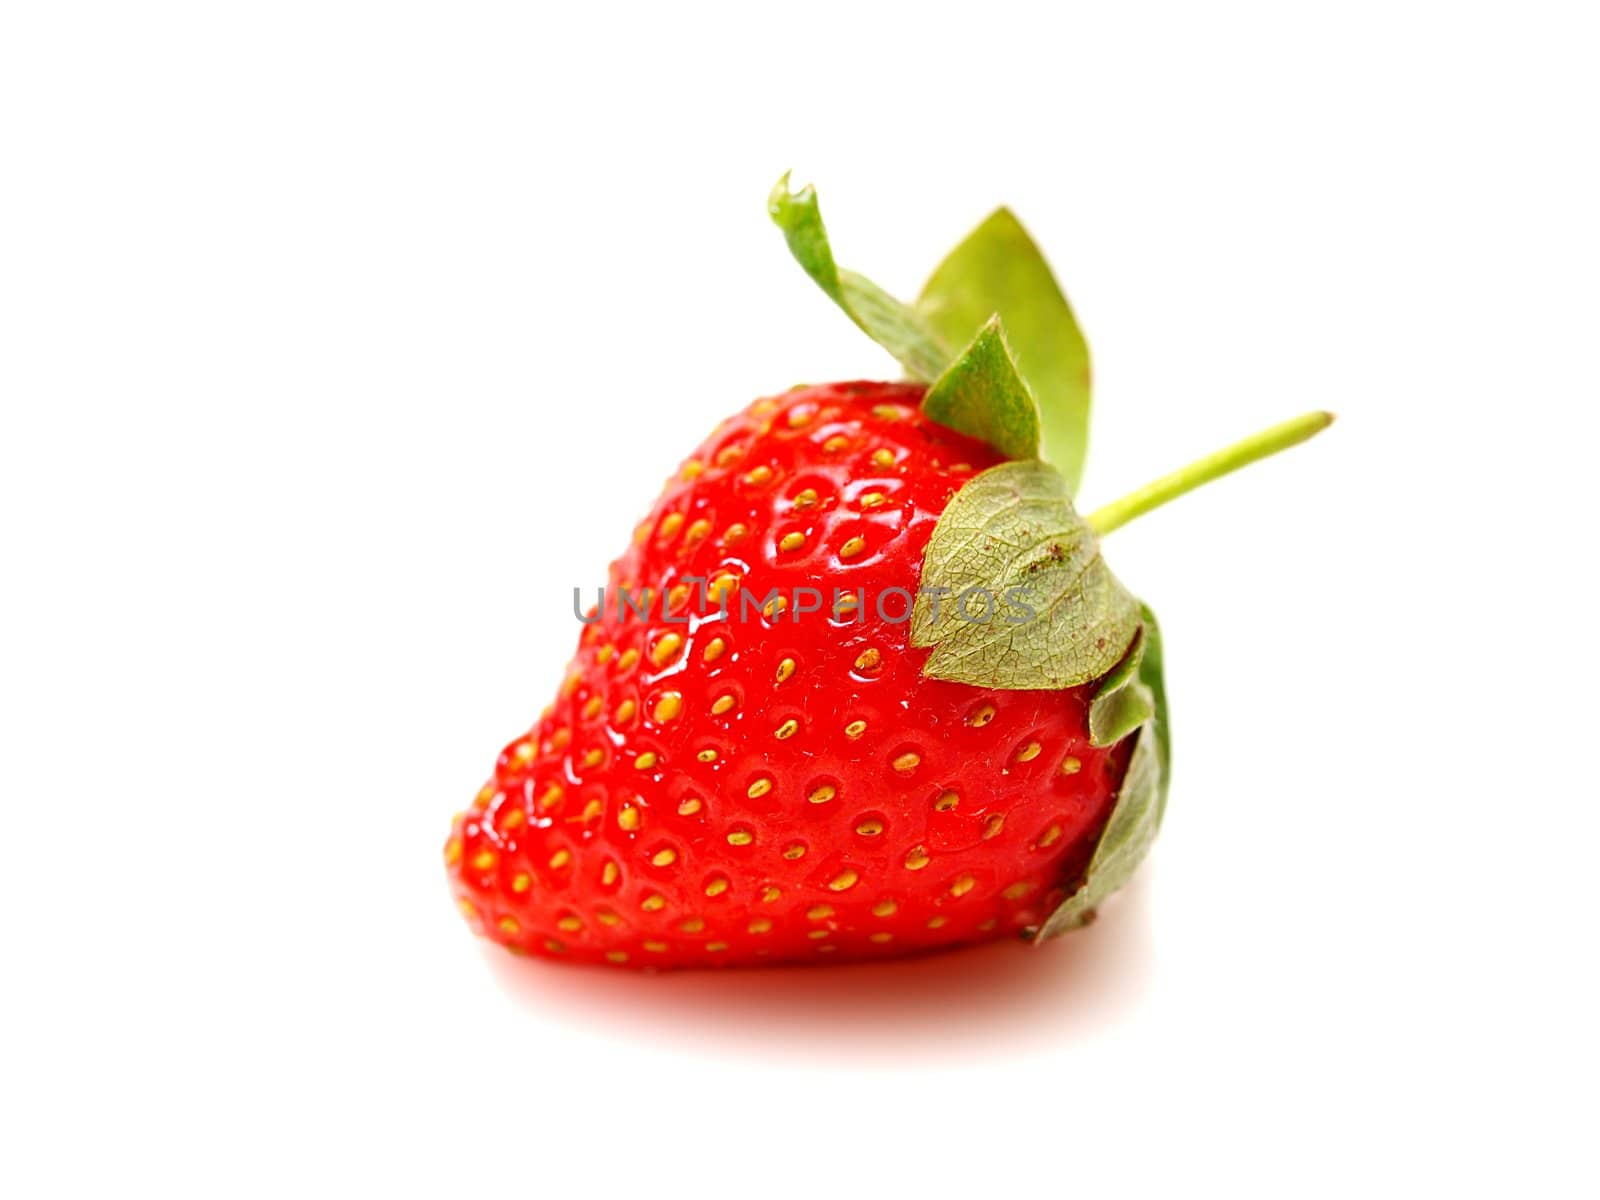 Strawberry by Arvebettum